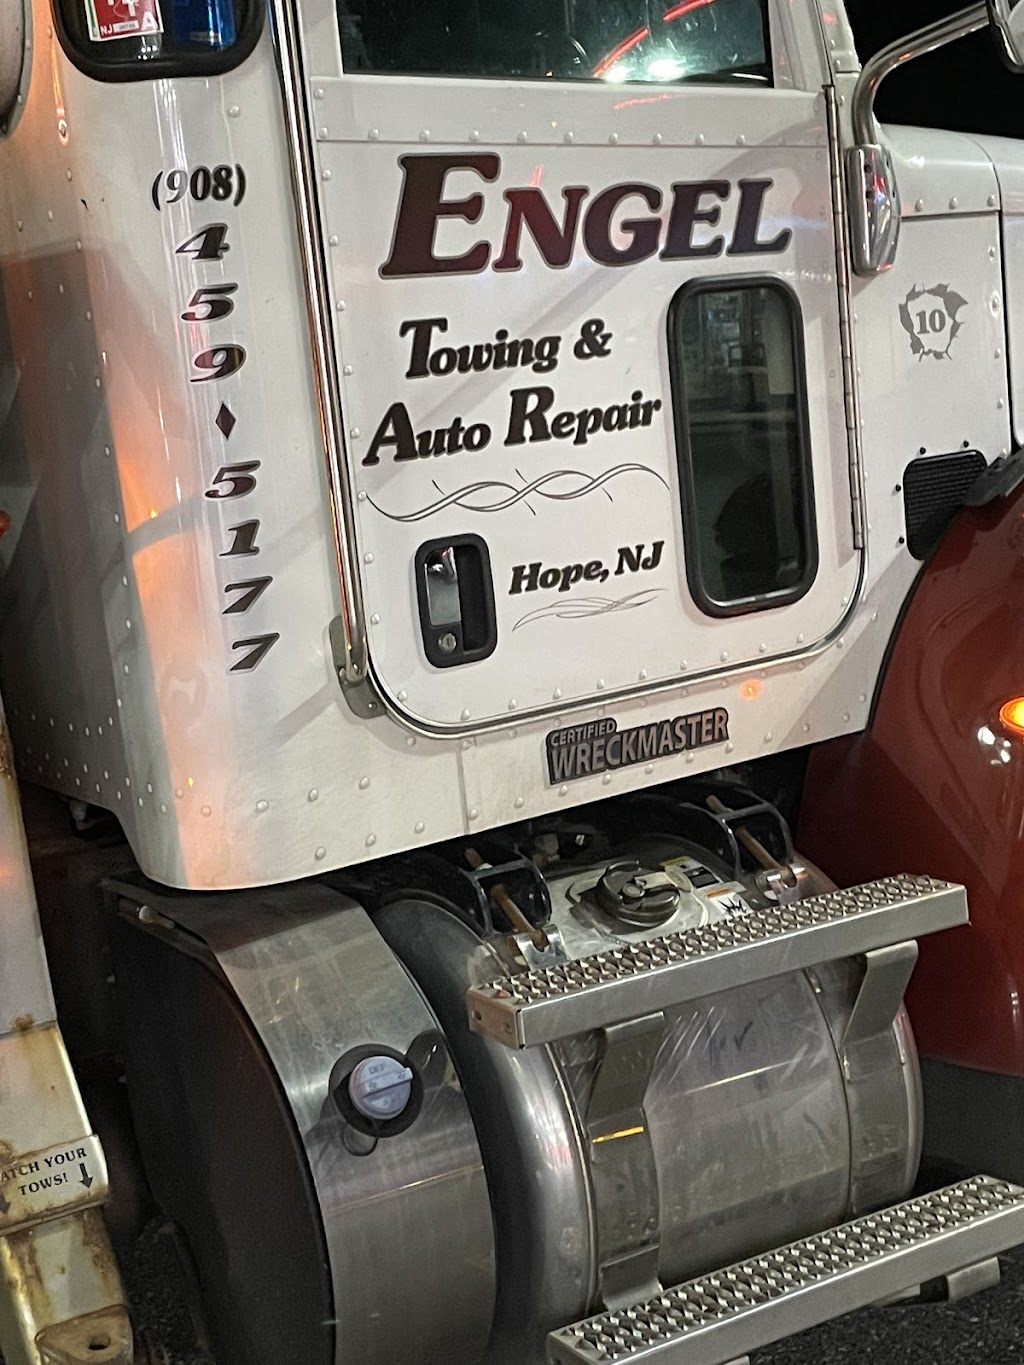 Engels Towing & Auto Repair | 1 Camp Hope Ln, Blairstown, NJ 07825 | Phone: (908) 459-5177